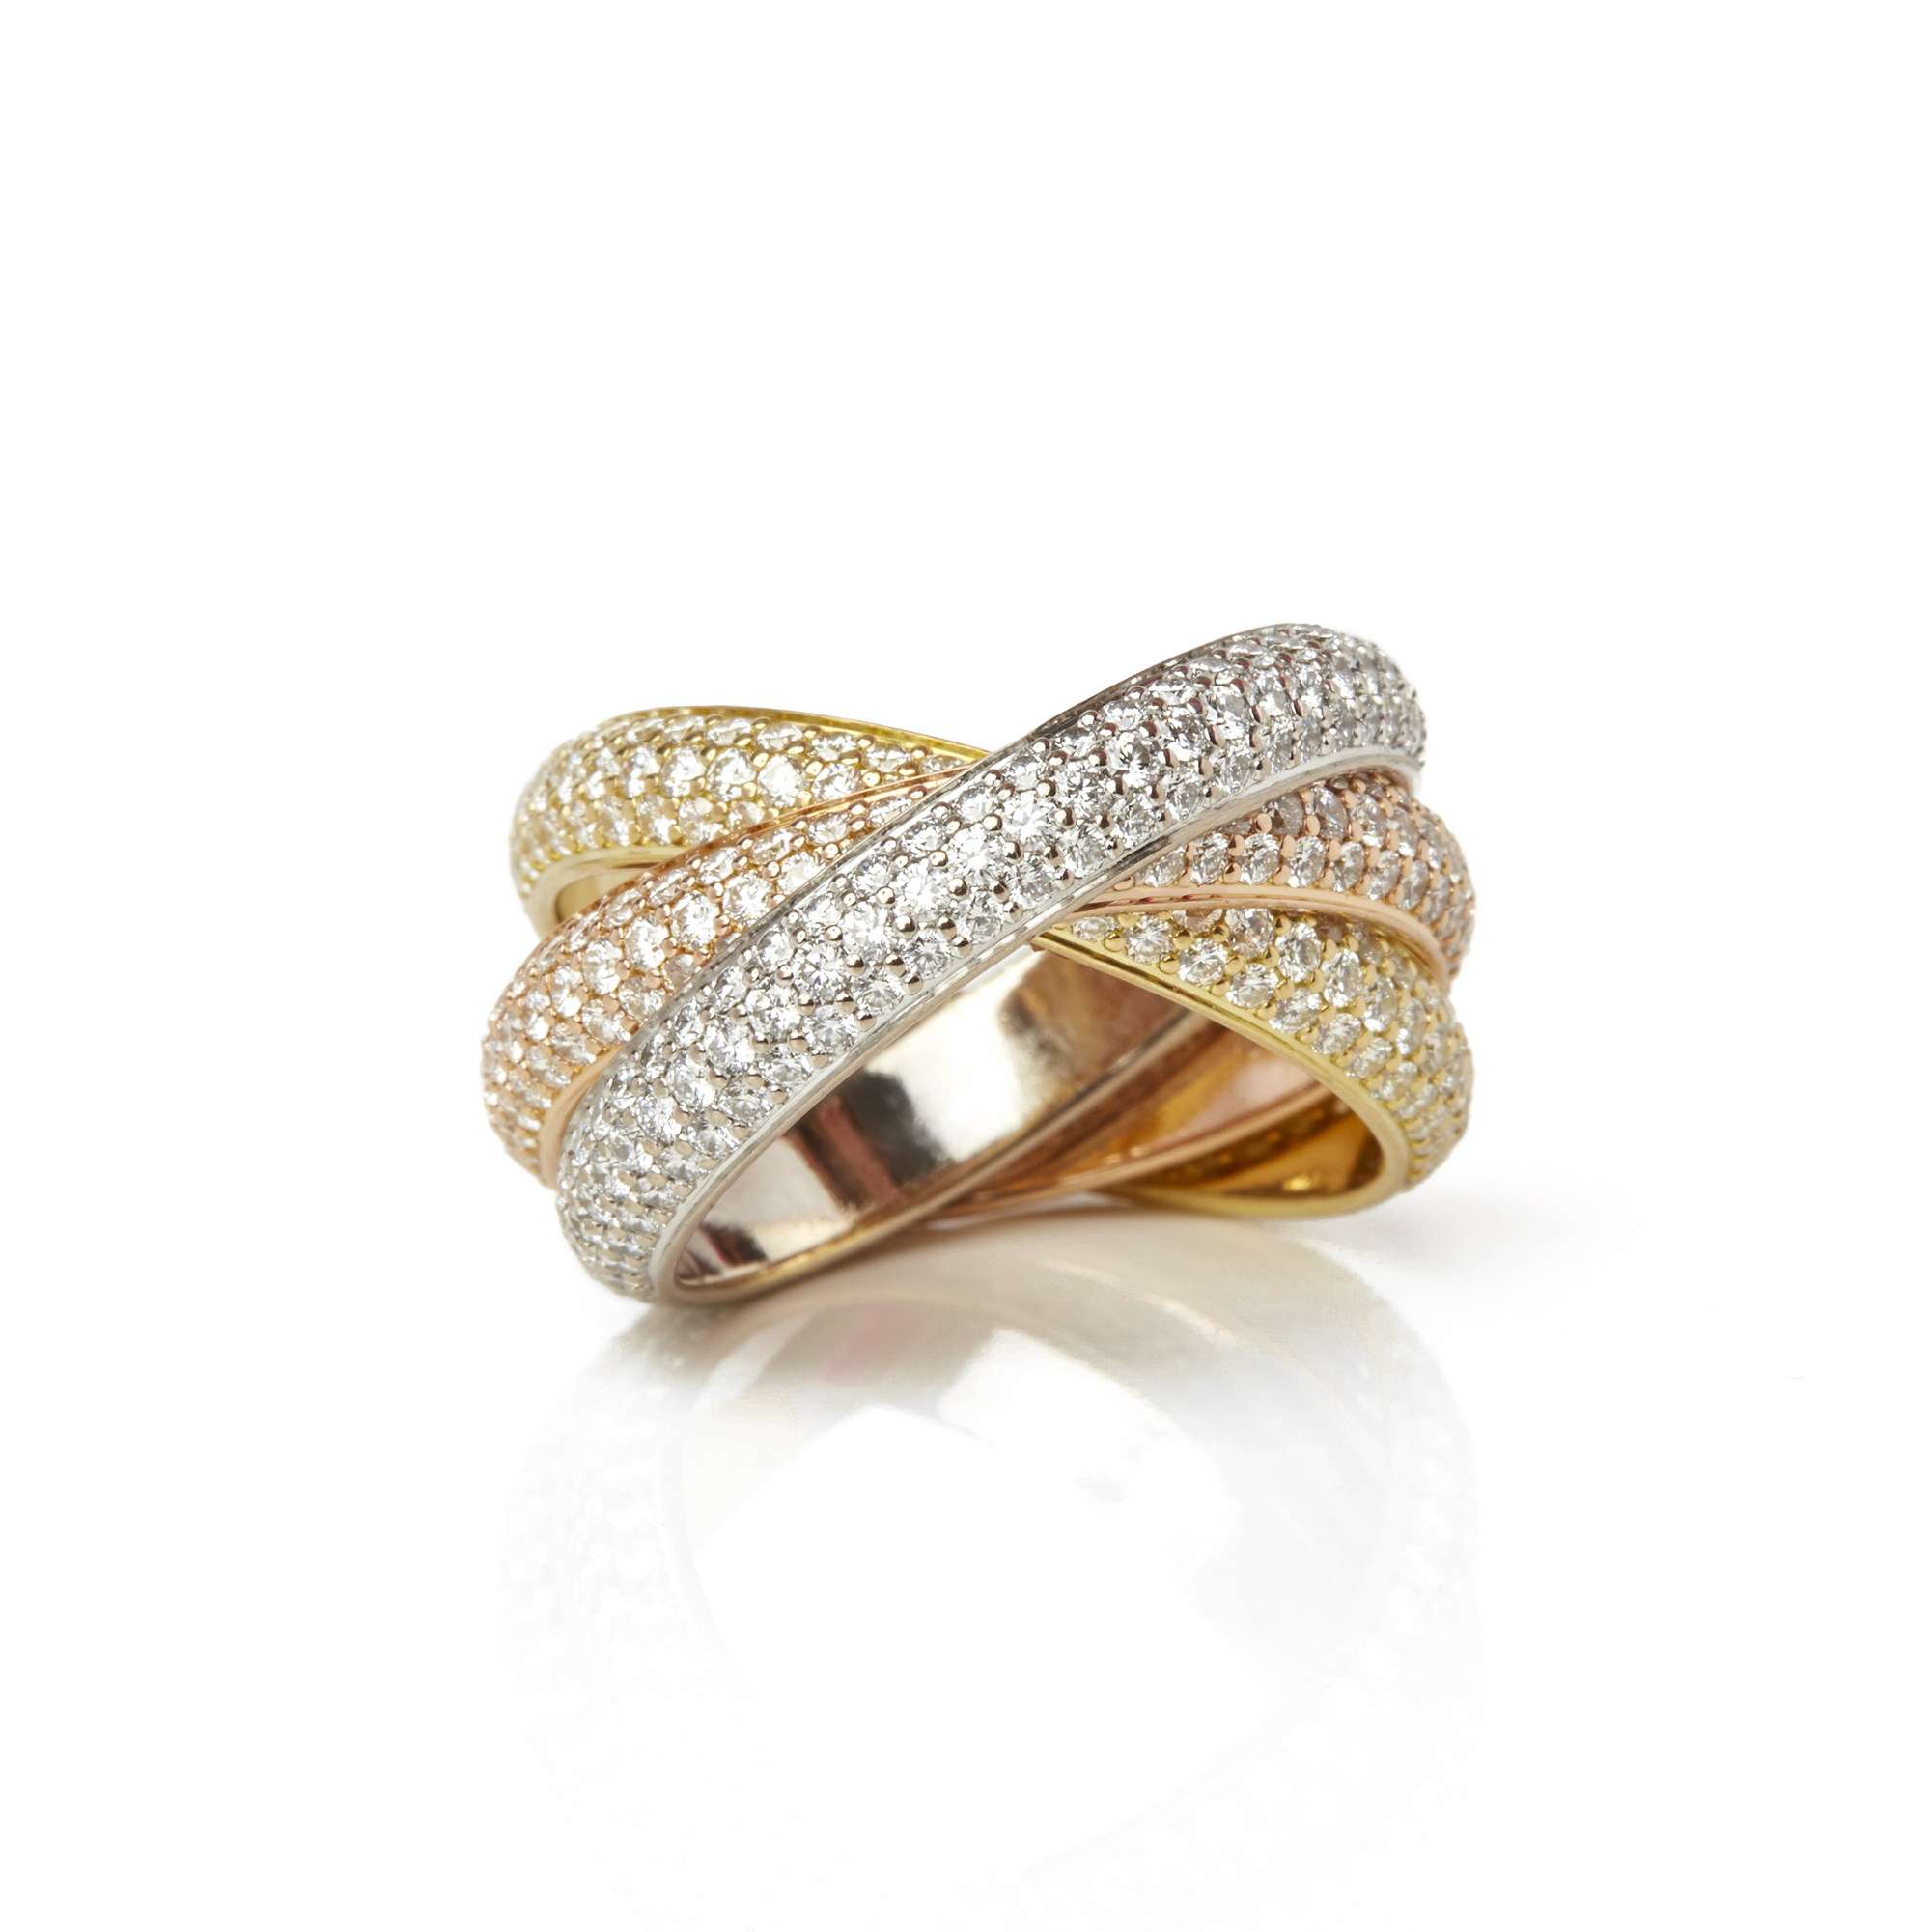 cartier trinity ring with diamonds price